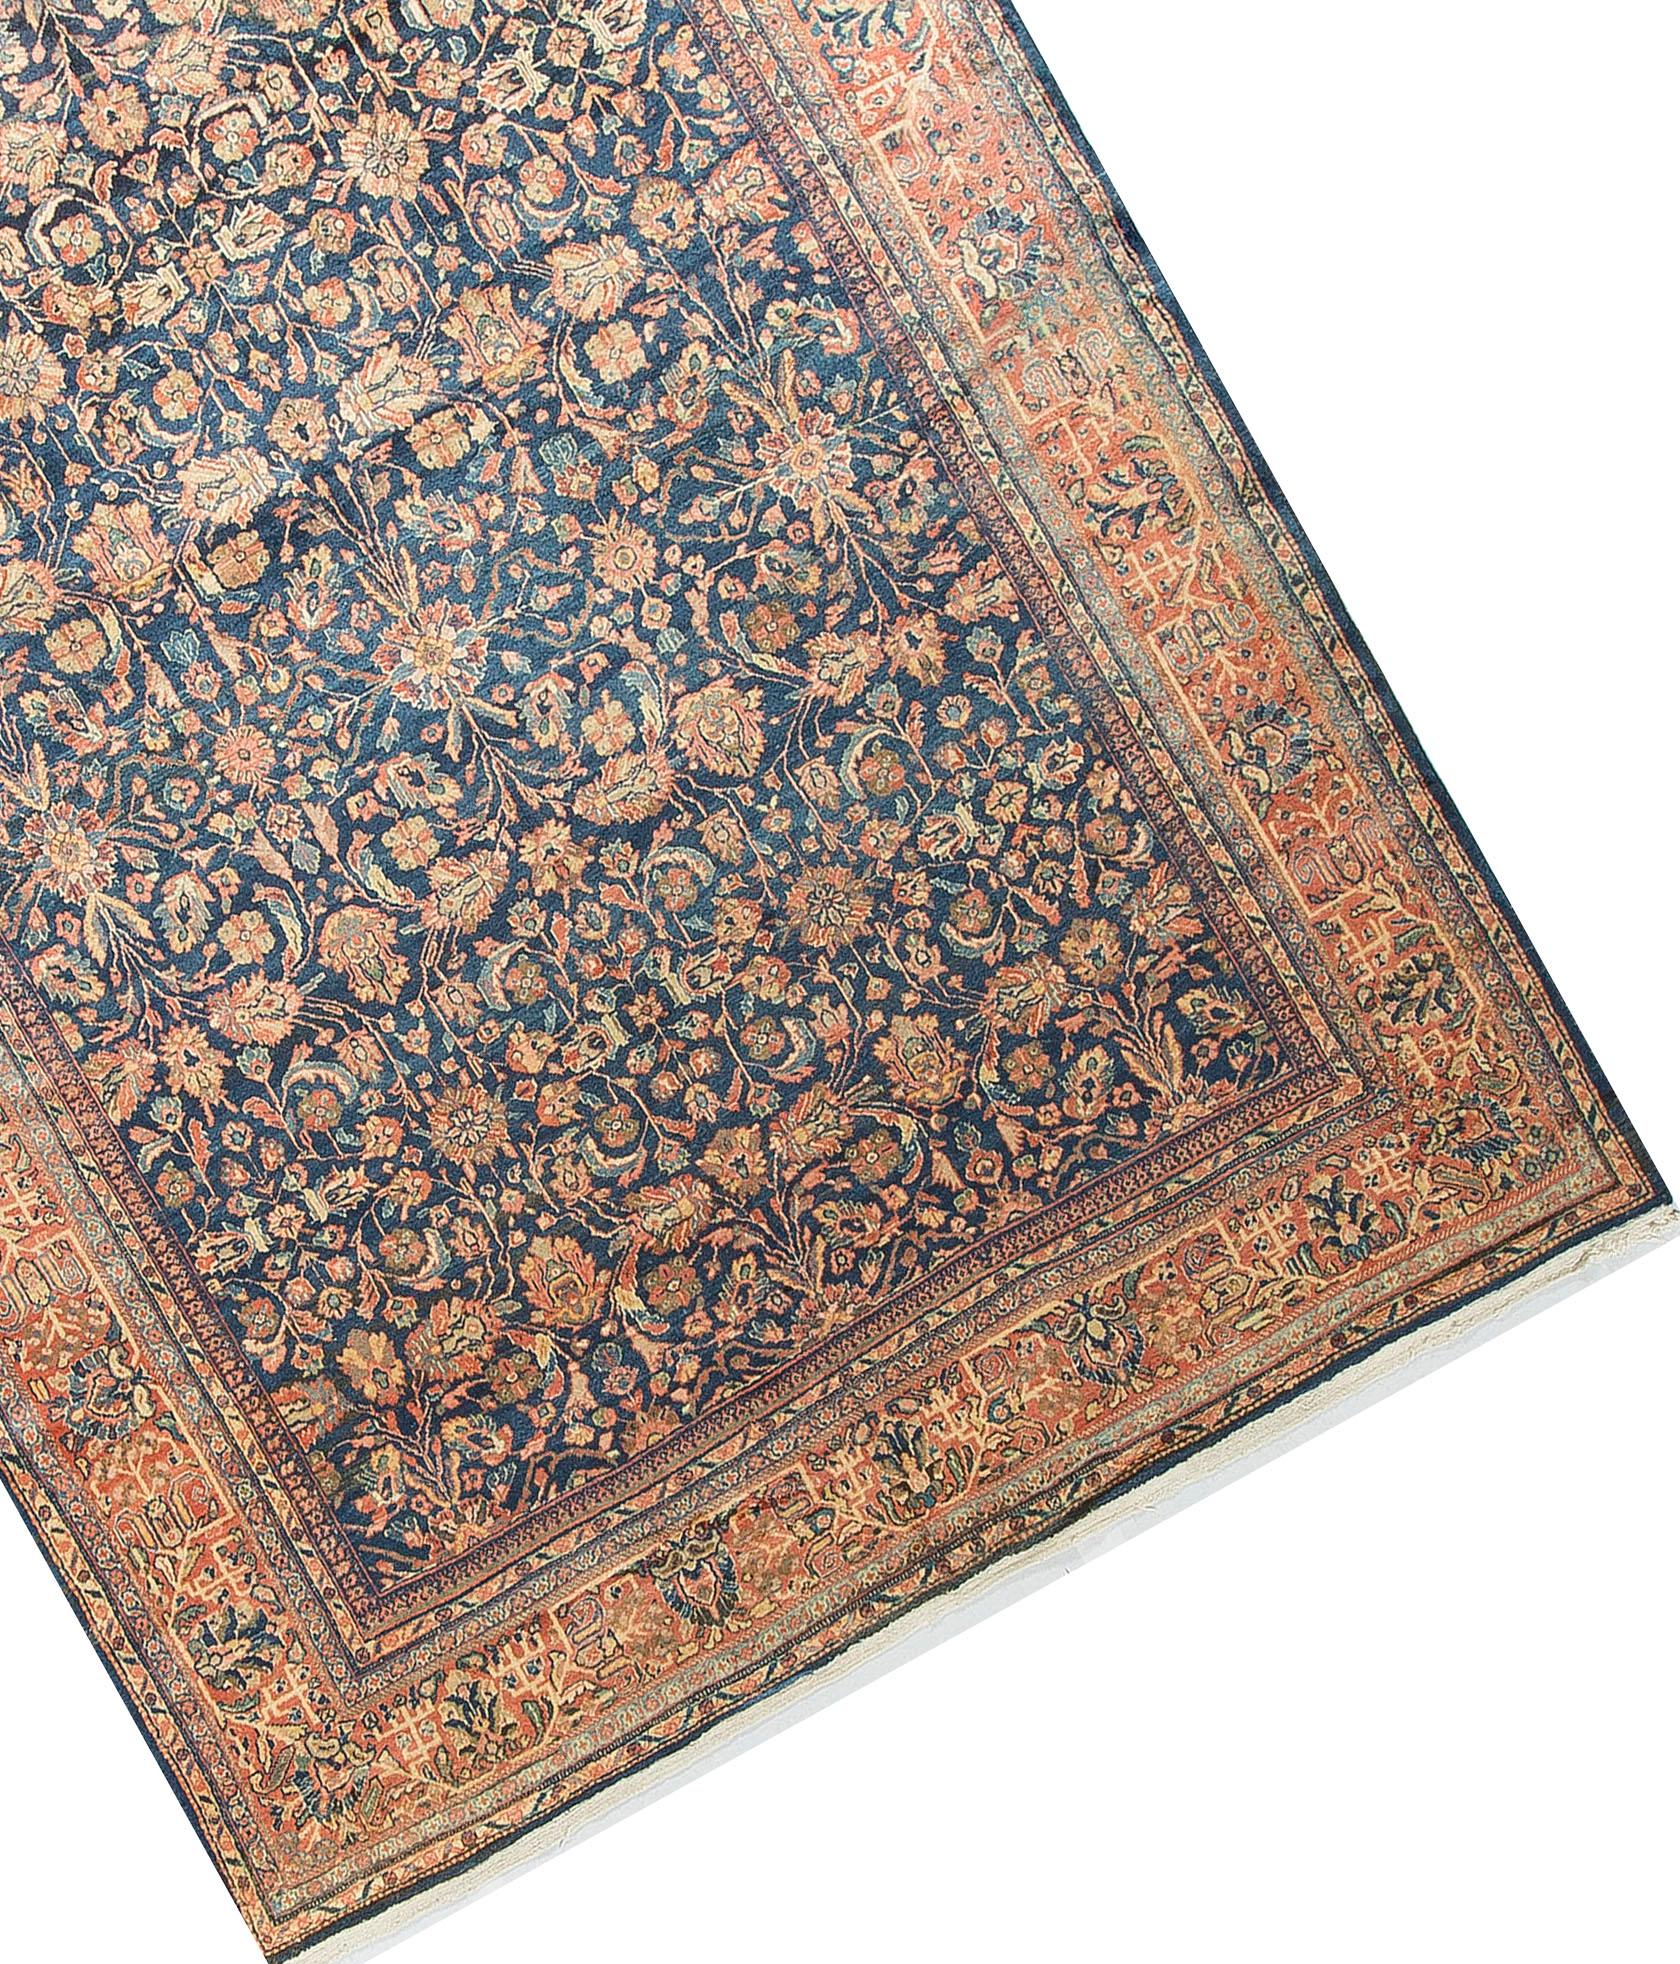 Hand-Woven Antique Persian Ziegler Rug, circa 1890 For Sale